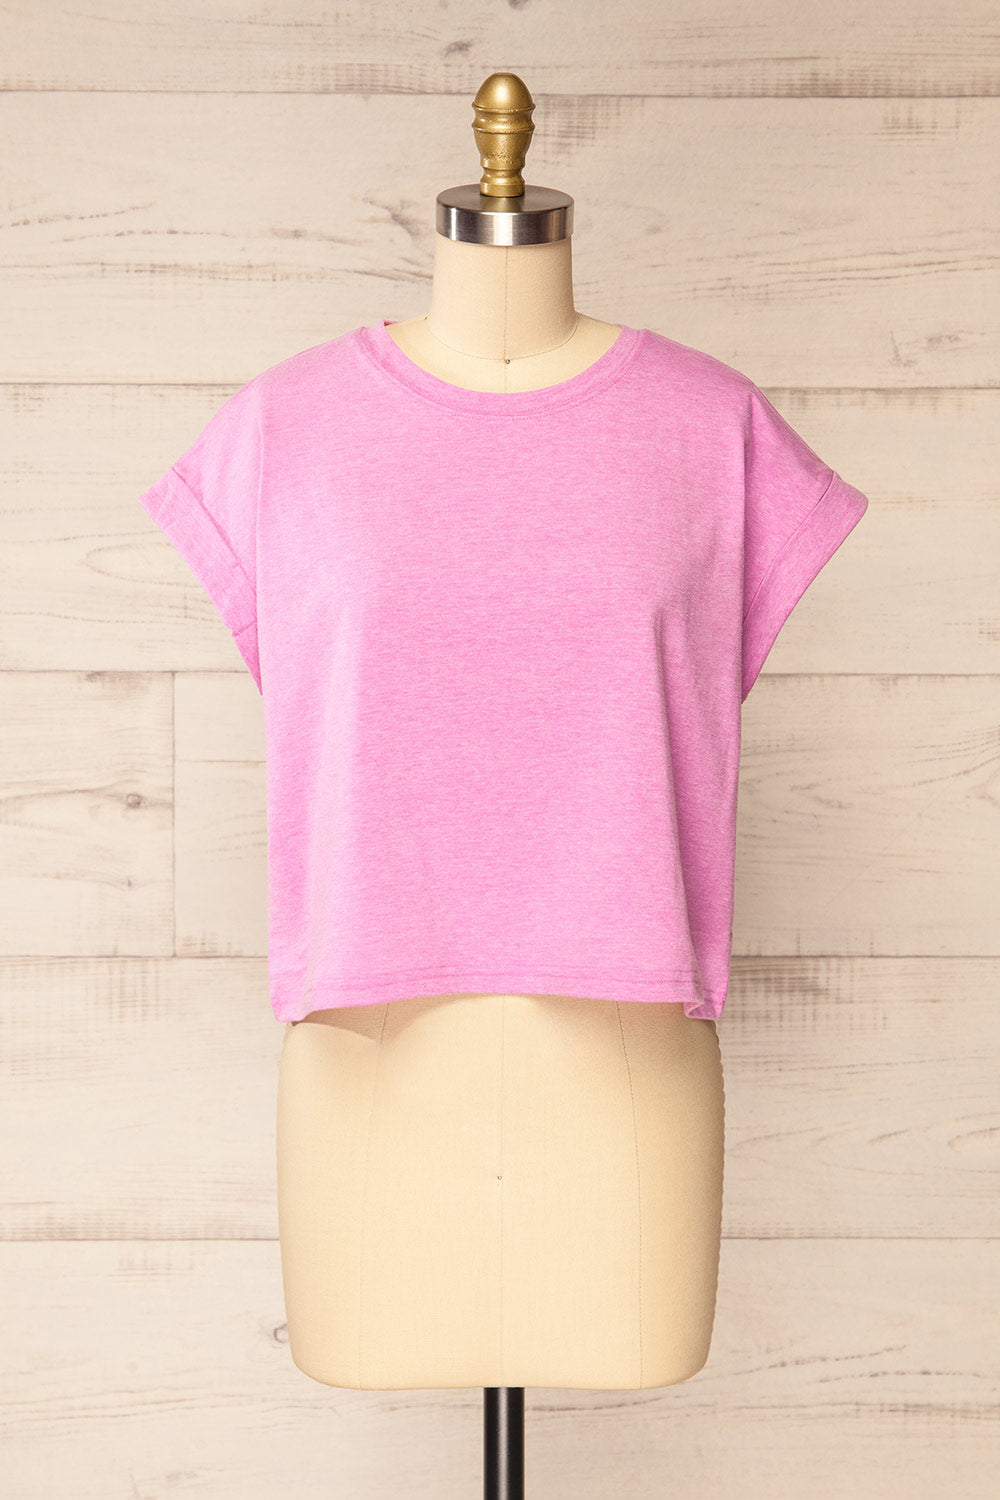 Cheddington Pink Cropped T-Shirt | La petite garçonne front view